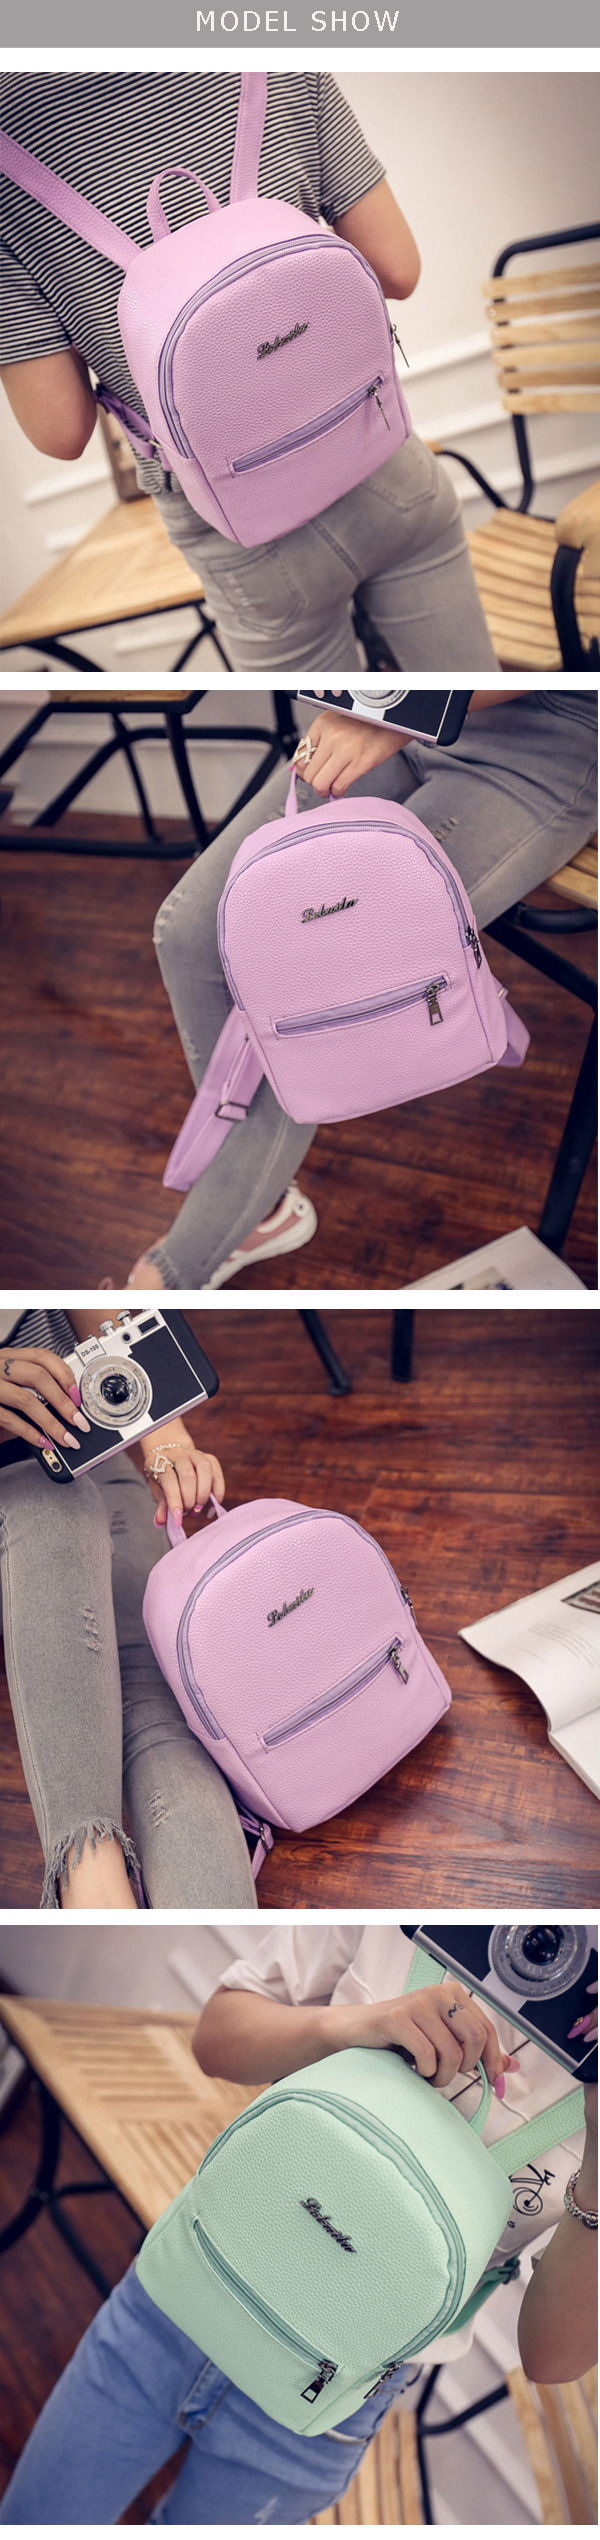 Women-PU-Leisure-Candy-Color-School-Bag-Backpack-Shoulder-Bag-1329132